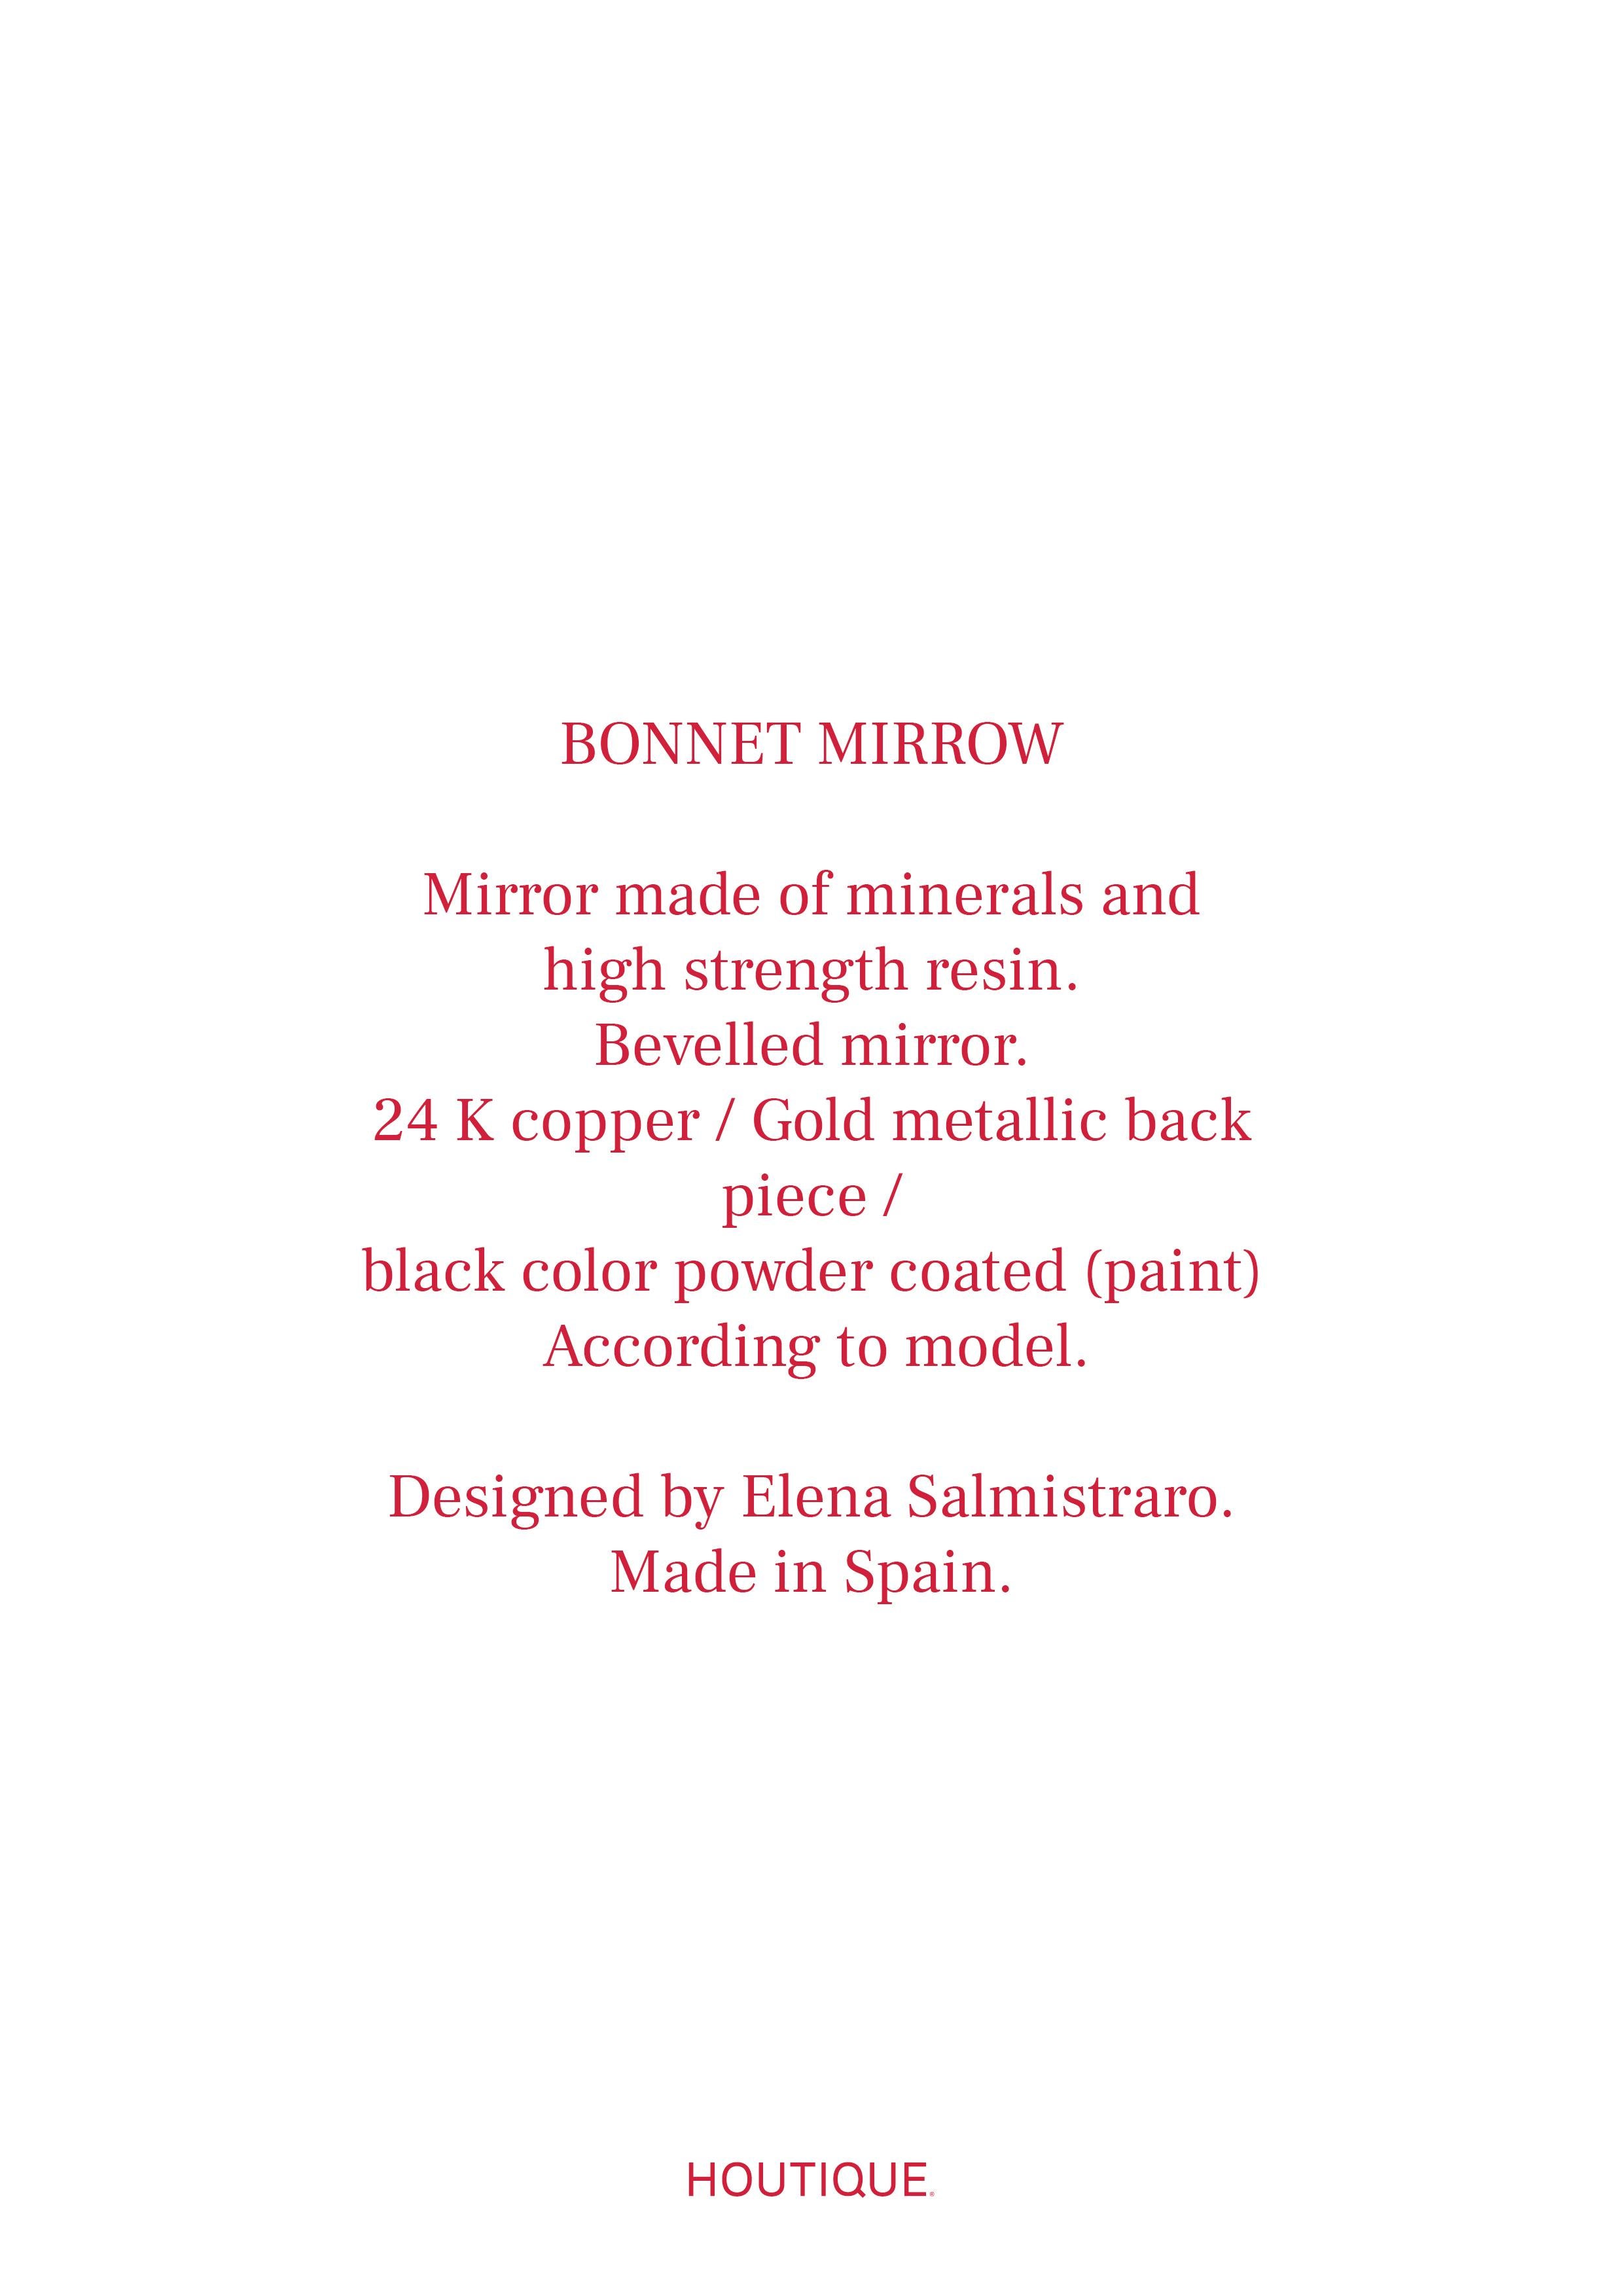 Spanish Bonnet Mirror by Houtique, Blue